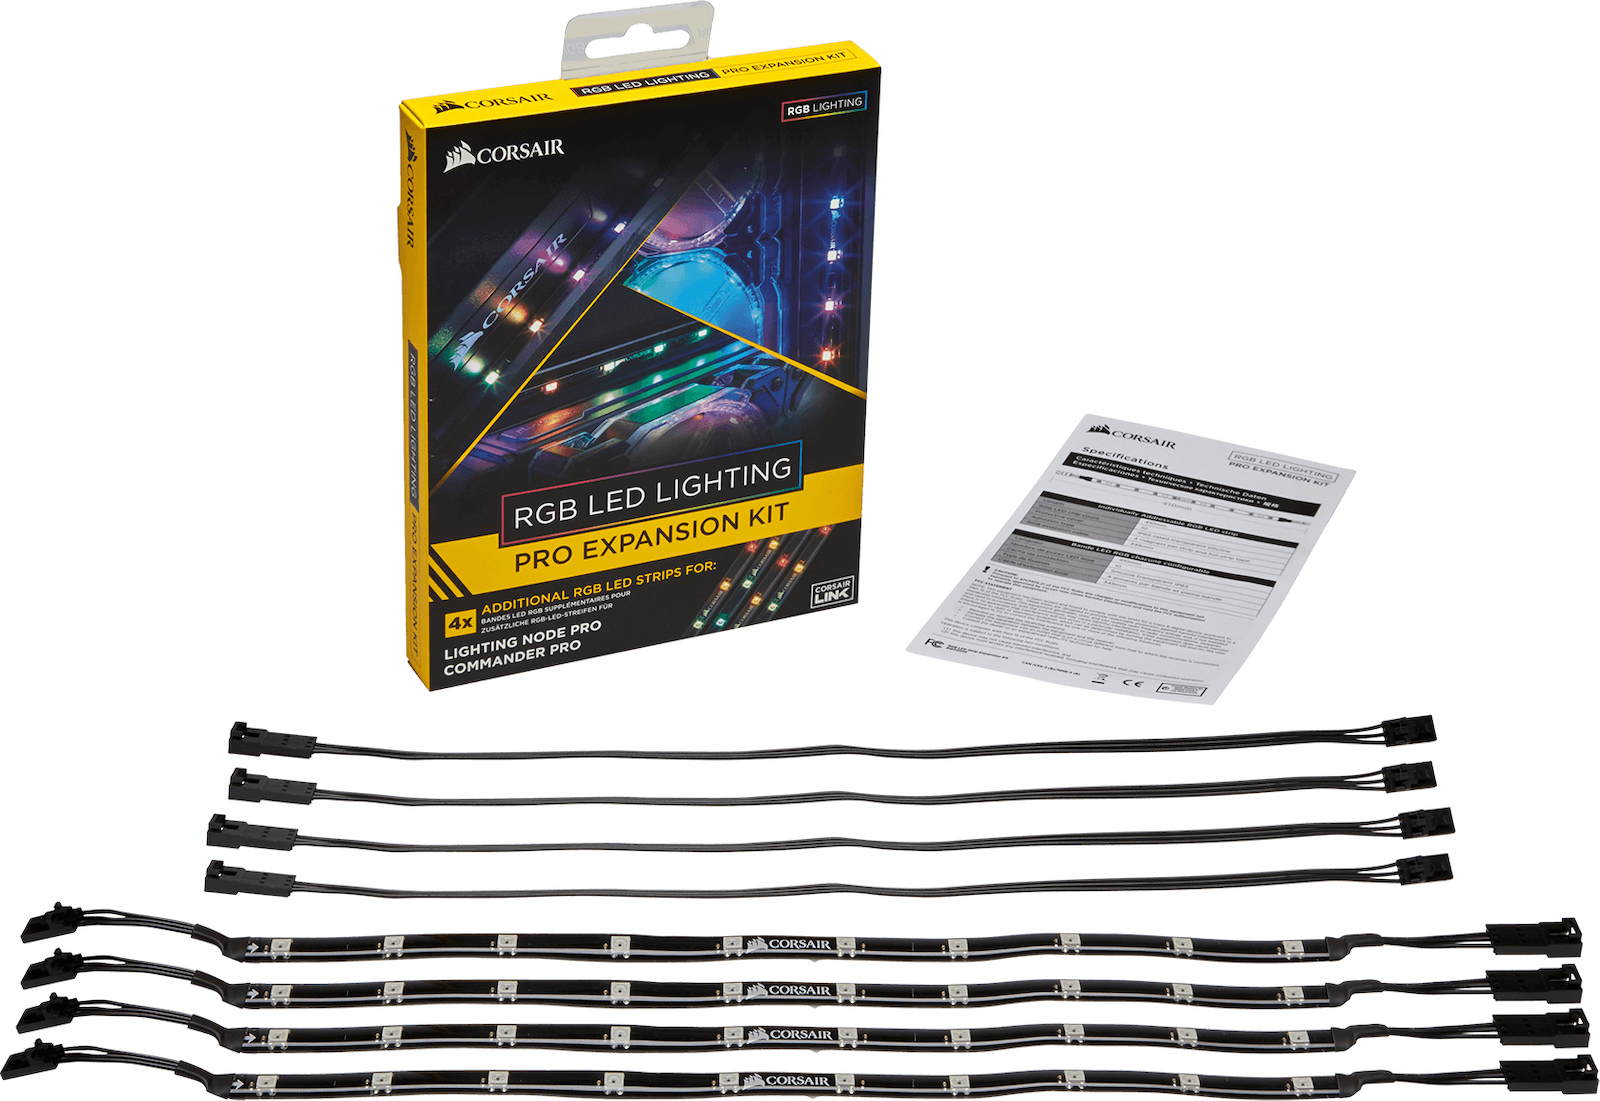 Corsair RGB LED Lighting Pro Expansion Kit LED Strip